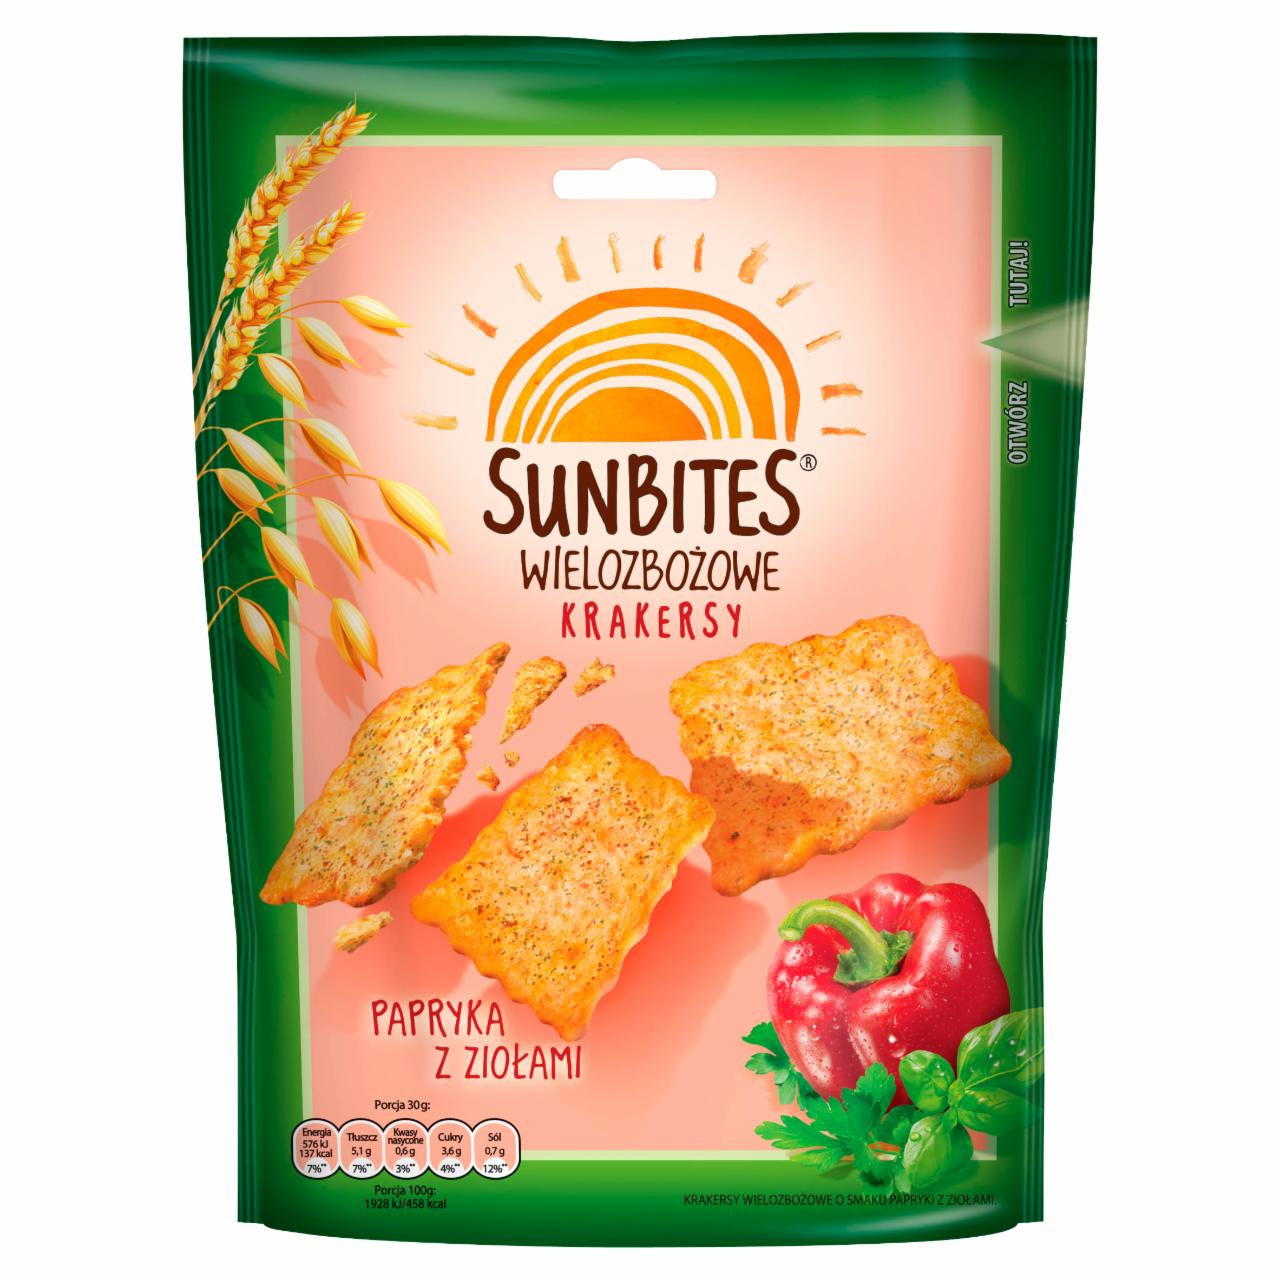 Zdjęcia - Sunbites Wielozbożowe krakersy papryka z ziołami 100 g